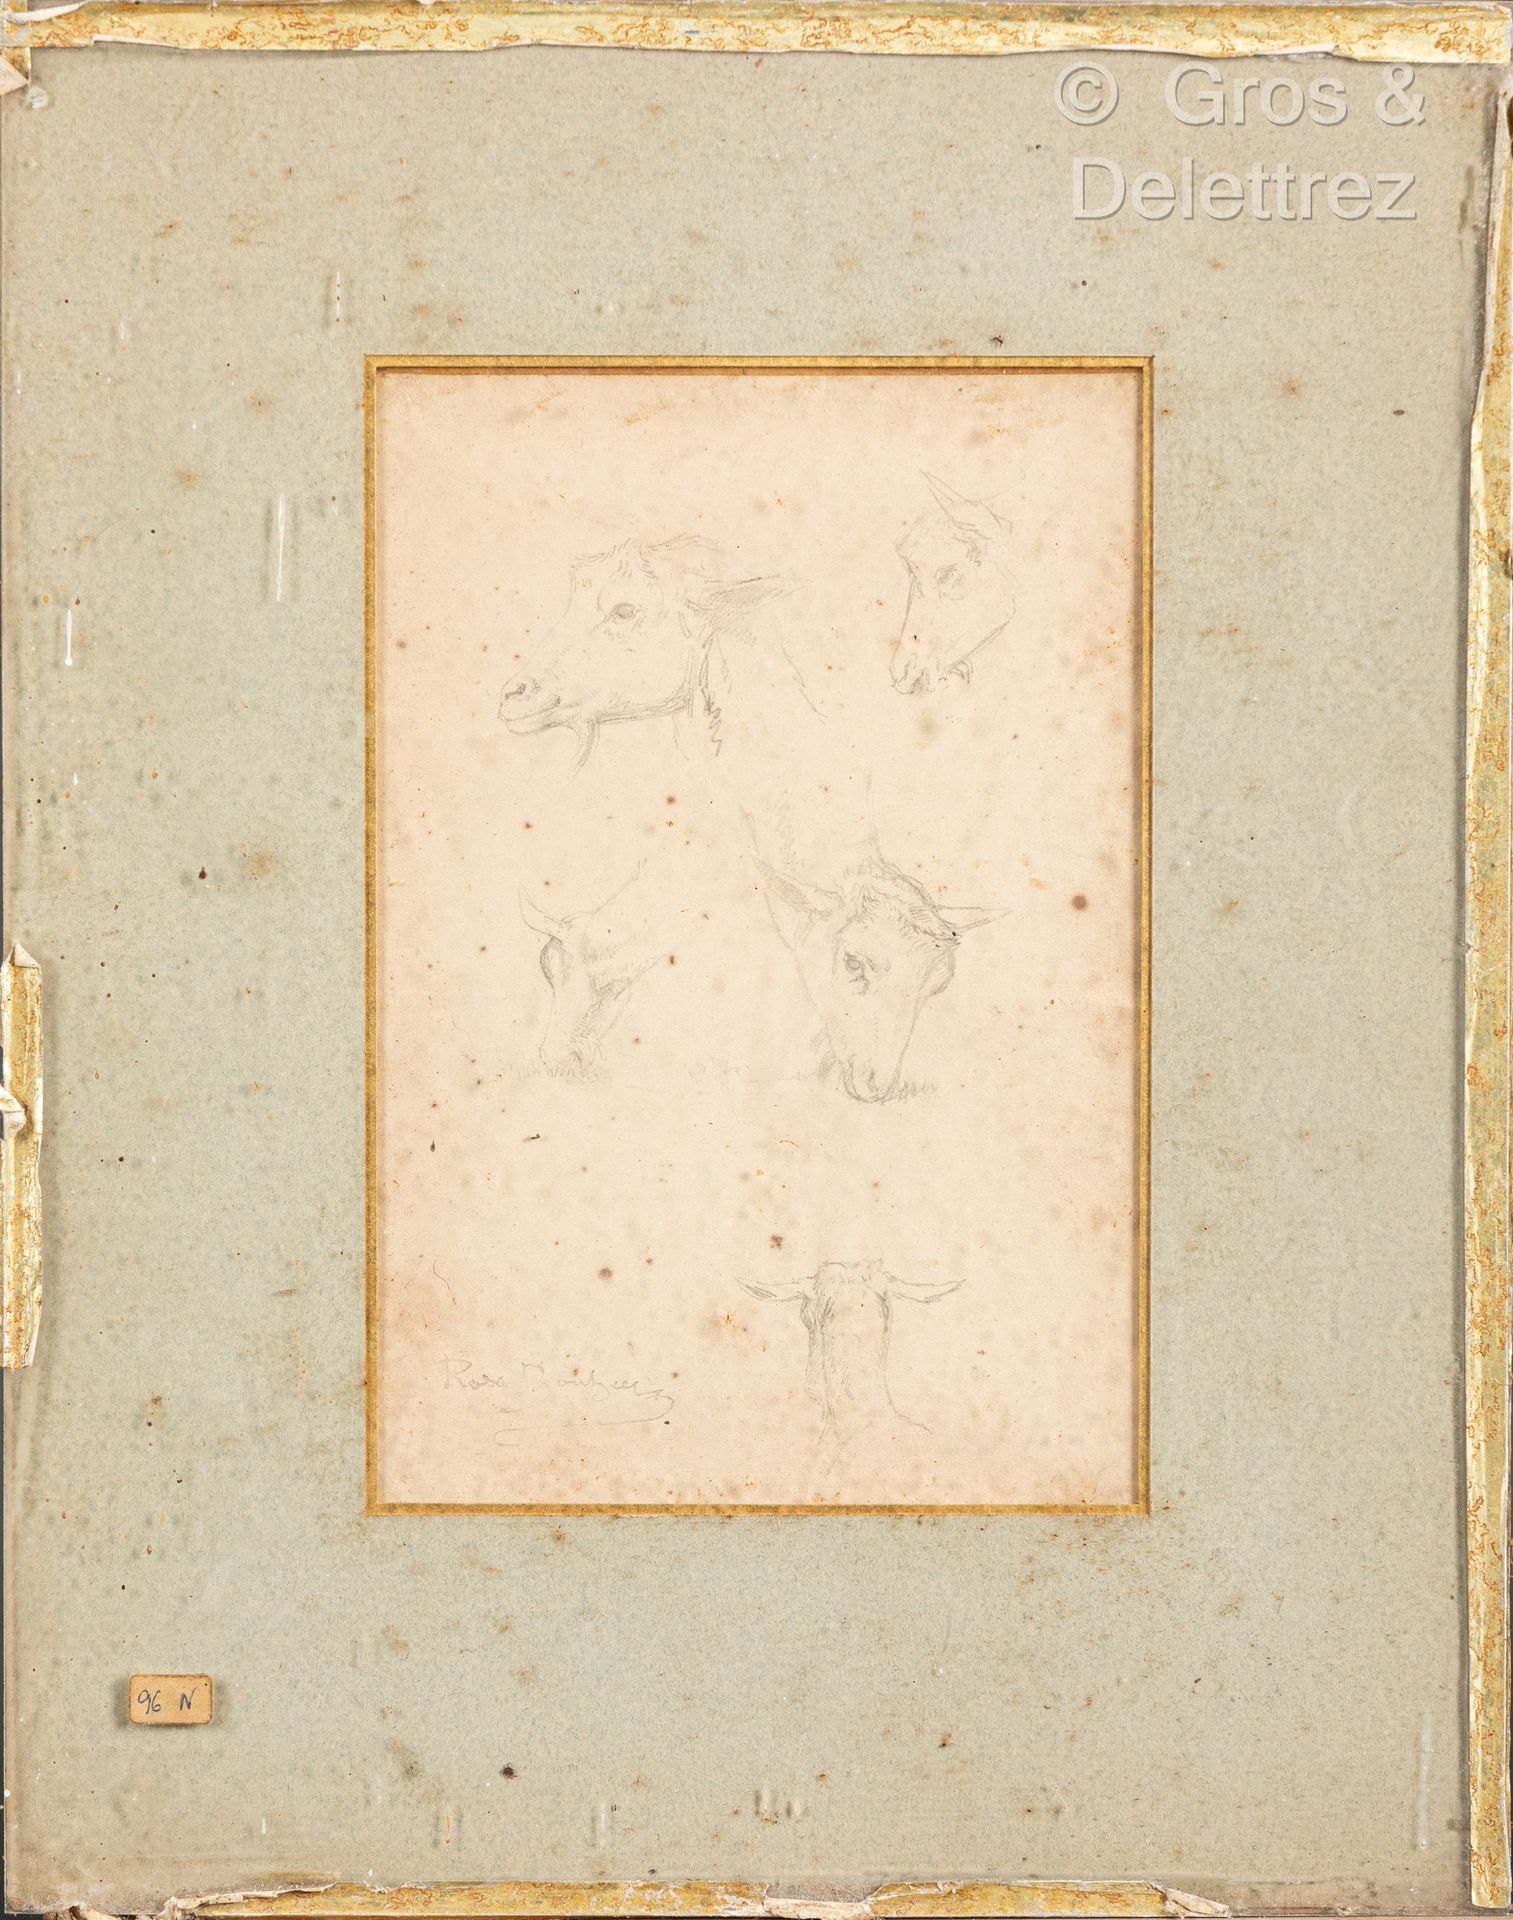 Null 罗莎-邦赫 (1822-1899)
小羊研究和绵羊研究
纸上两支铅笔，左下方有签名
21.5 x 15 厘米；展出时为 22 x 17 厘米。污迹
出&hellip;